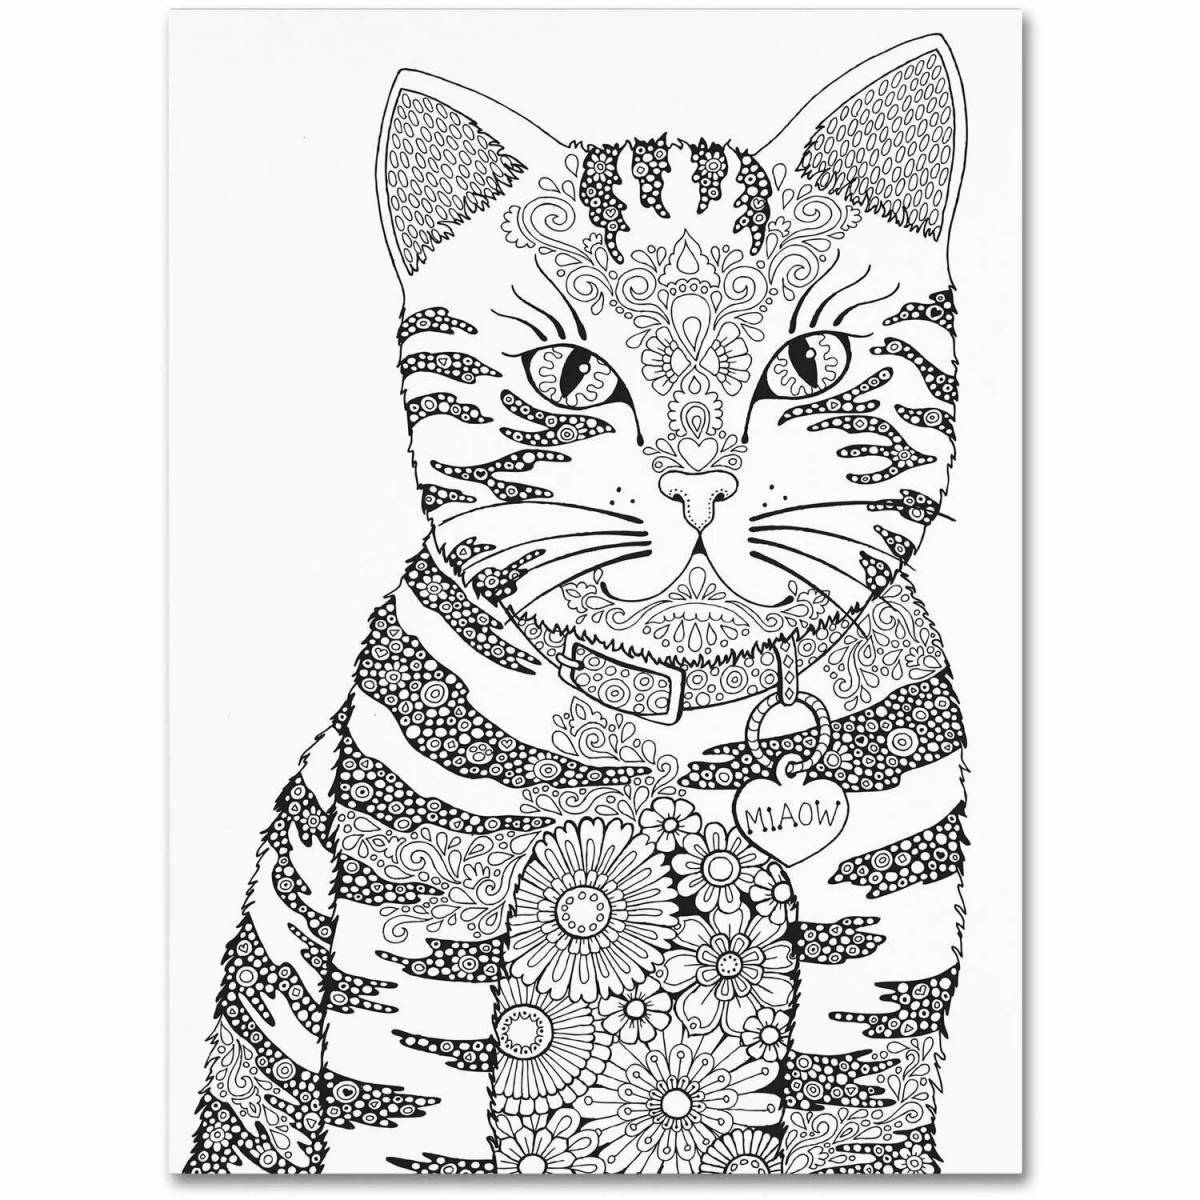 Раскраска Кошка и котята для детей распечатать бесплатно для девочек в формате а4